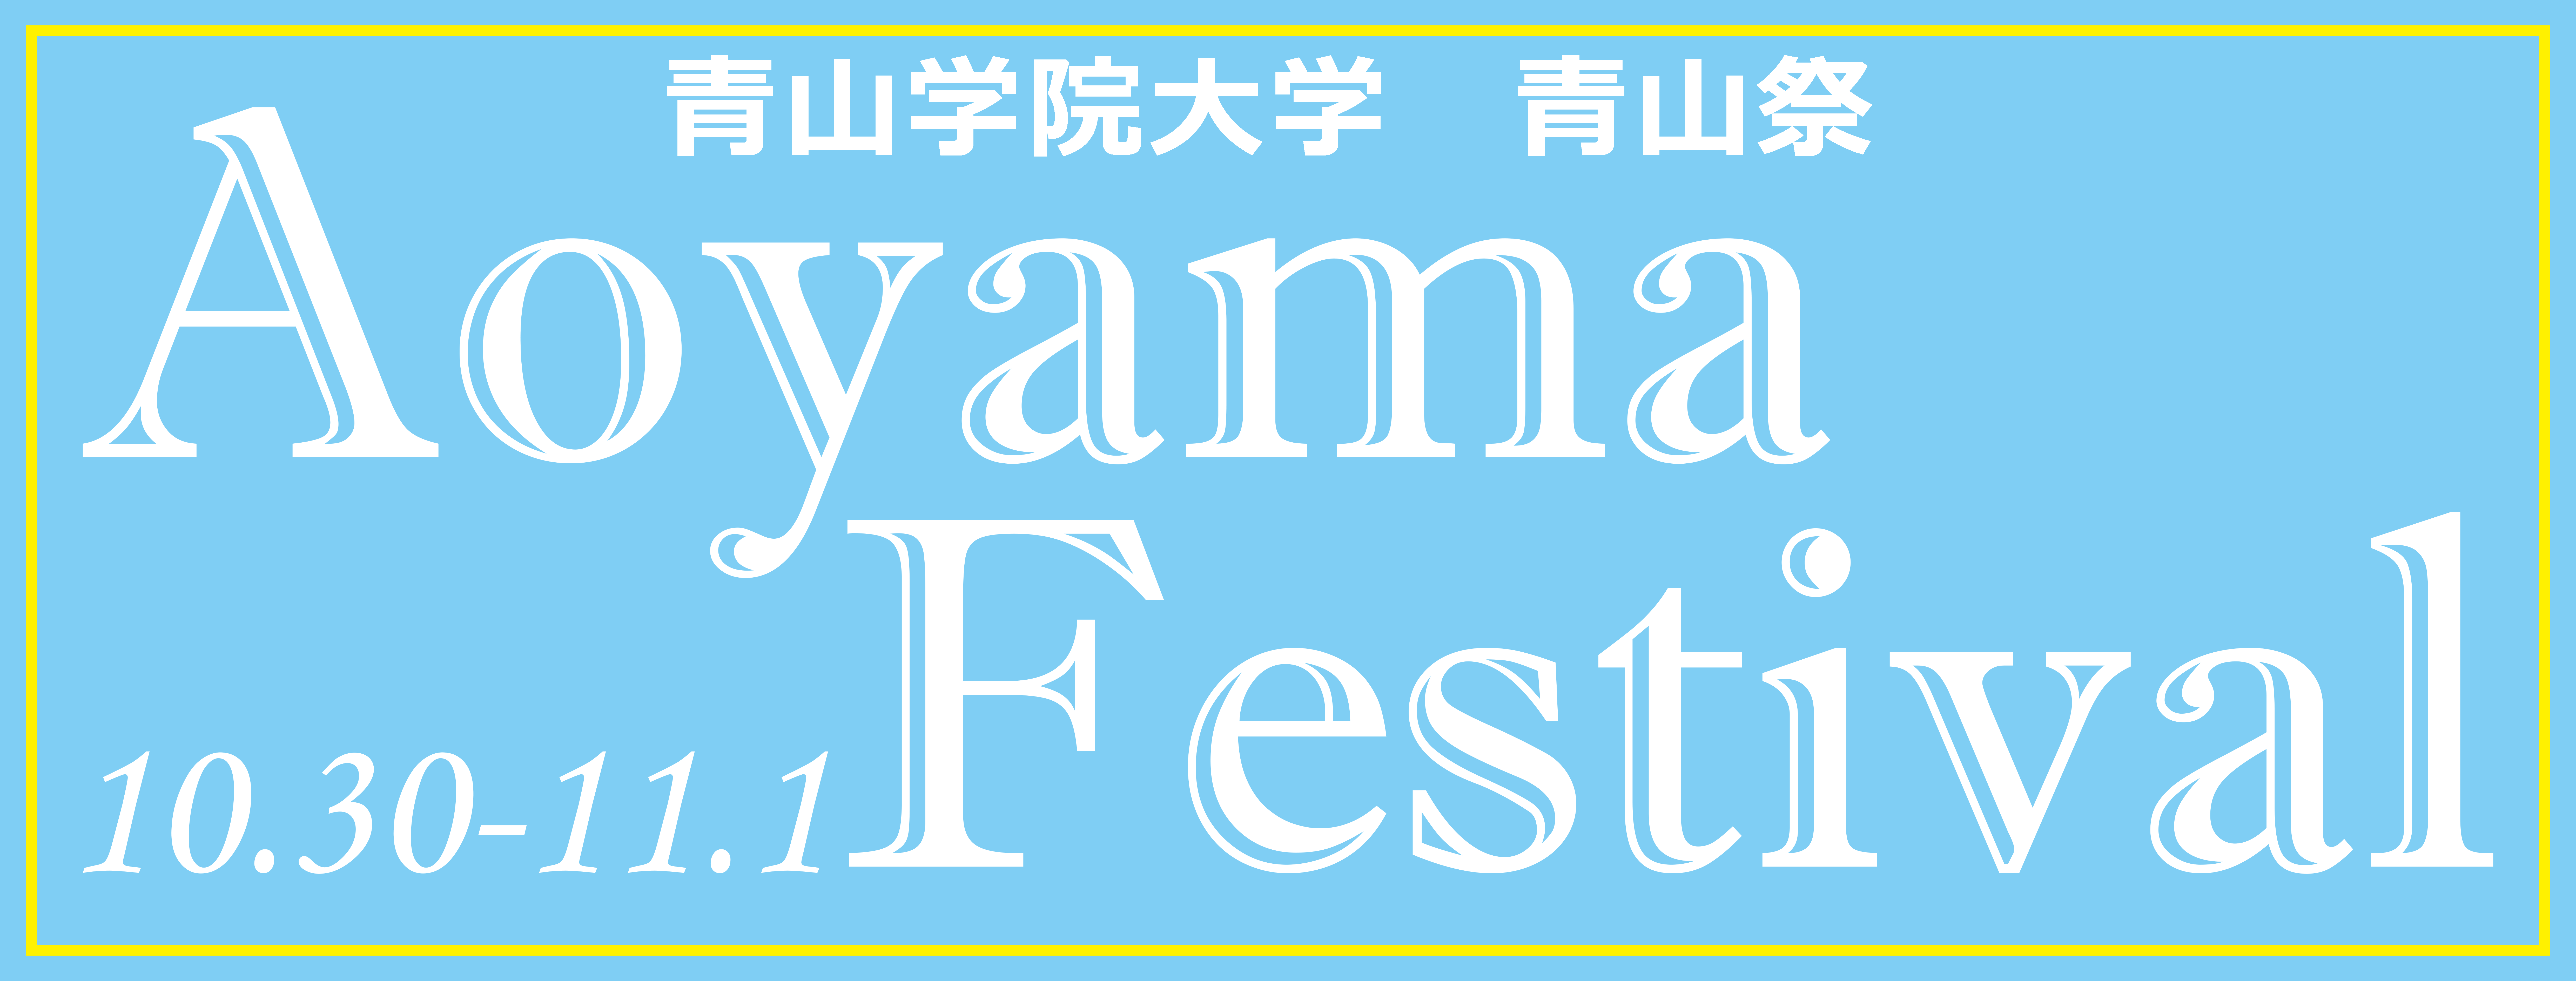 Aoyama Festival